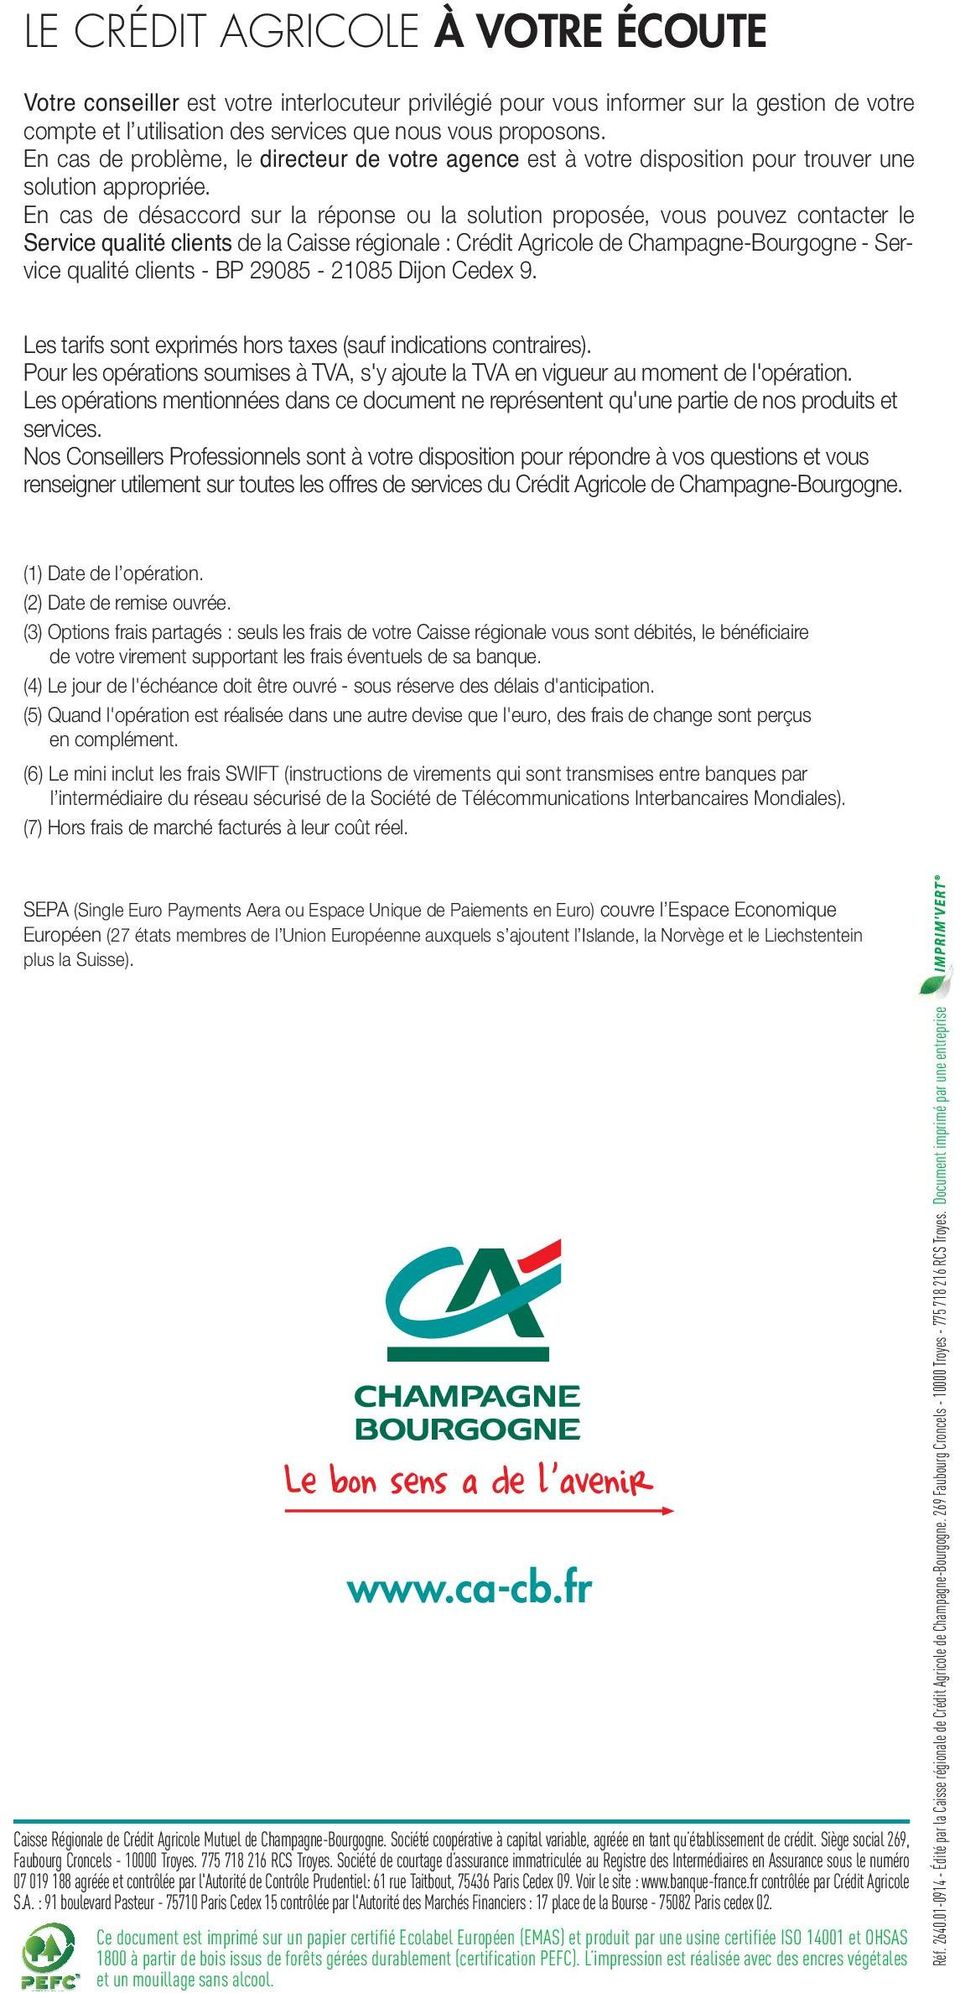 En cas de désaccord sur la réponse ou la solution proposée, vous pouvez contacter le Service qualité clients de la Caisse régionale : Crédit Agricole de Champagne-Bourgogne - Service qualité clients